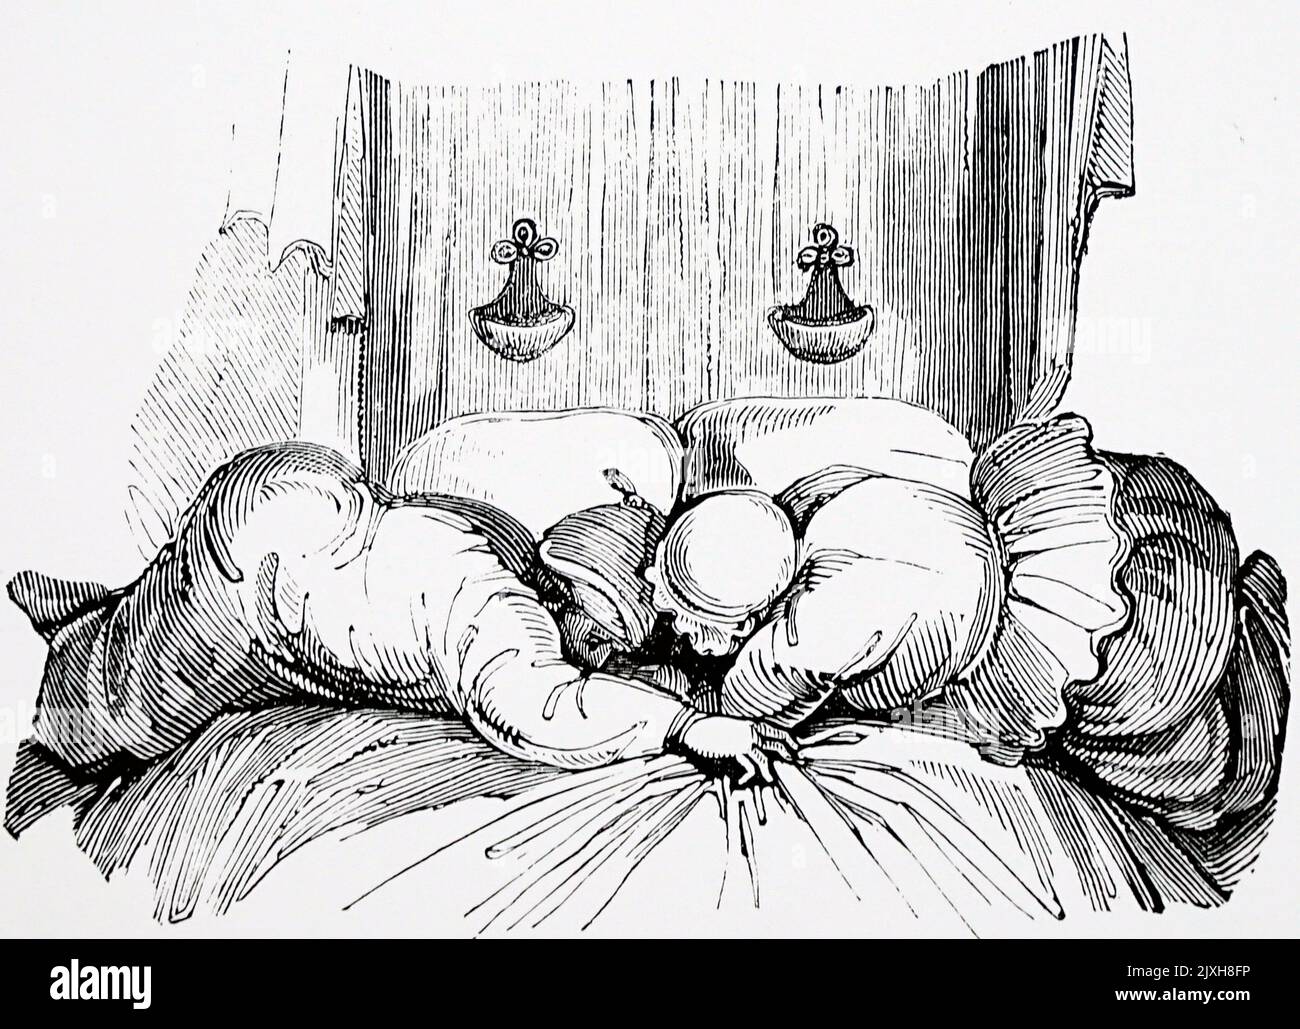 Abbildung, die einen Mann und eine Frau zeigt, die sich zum Bett bereit machen. Illustriert von Thomas Hood (1799-1845), einem englischen Dichter, Autor und Humoristen. Datiert aus dem 19.. Jahrhundert Stockfoto